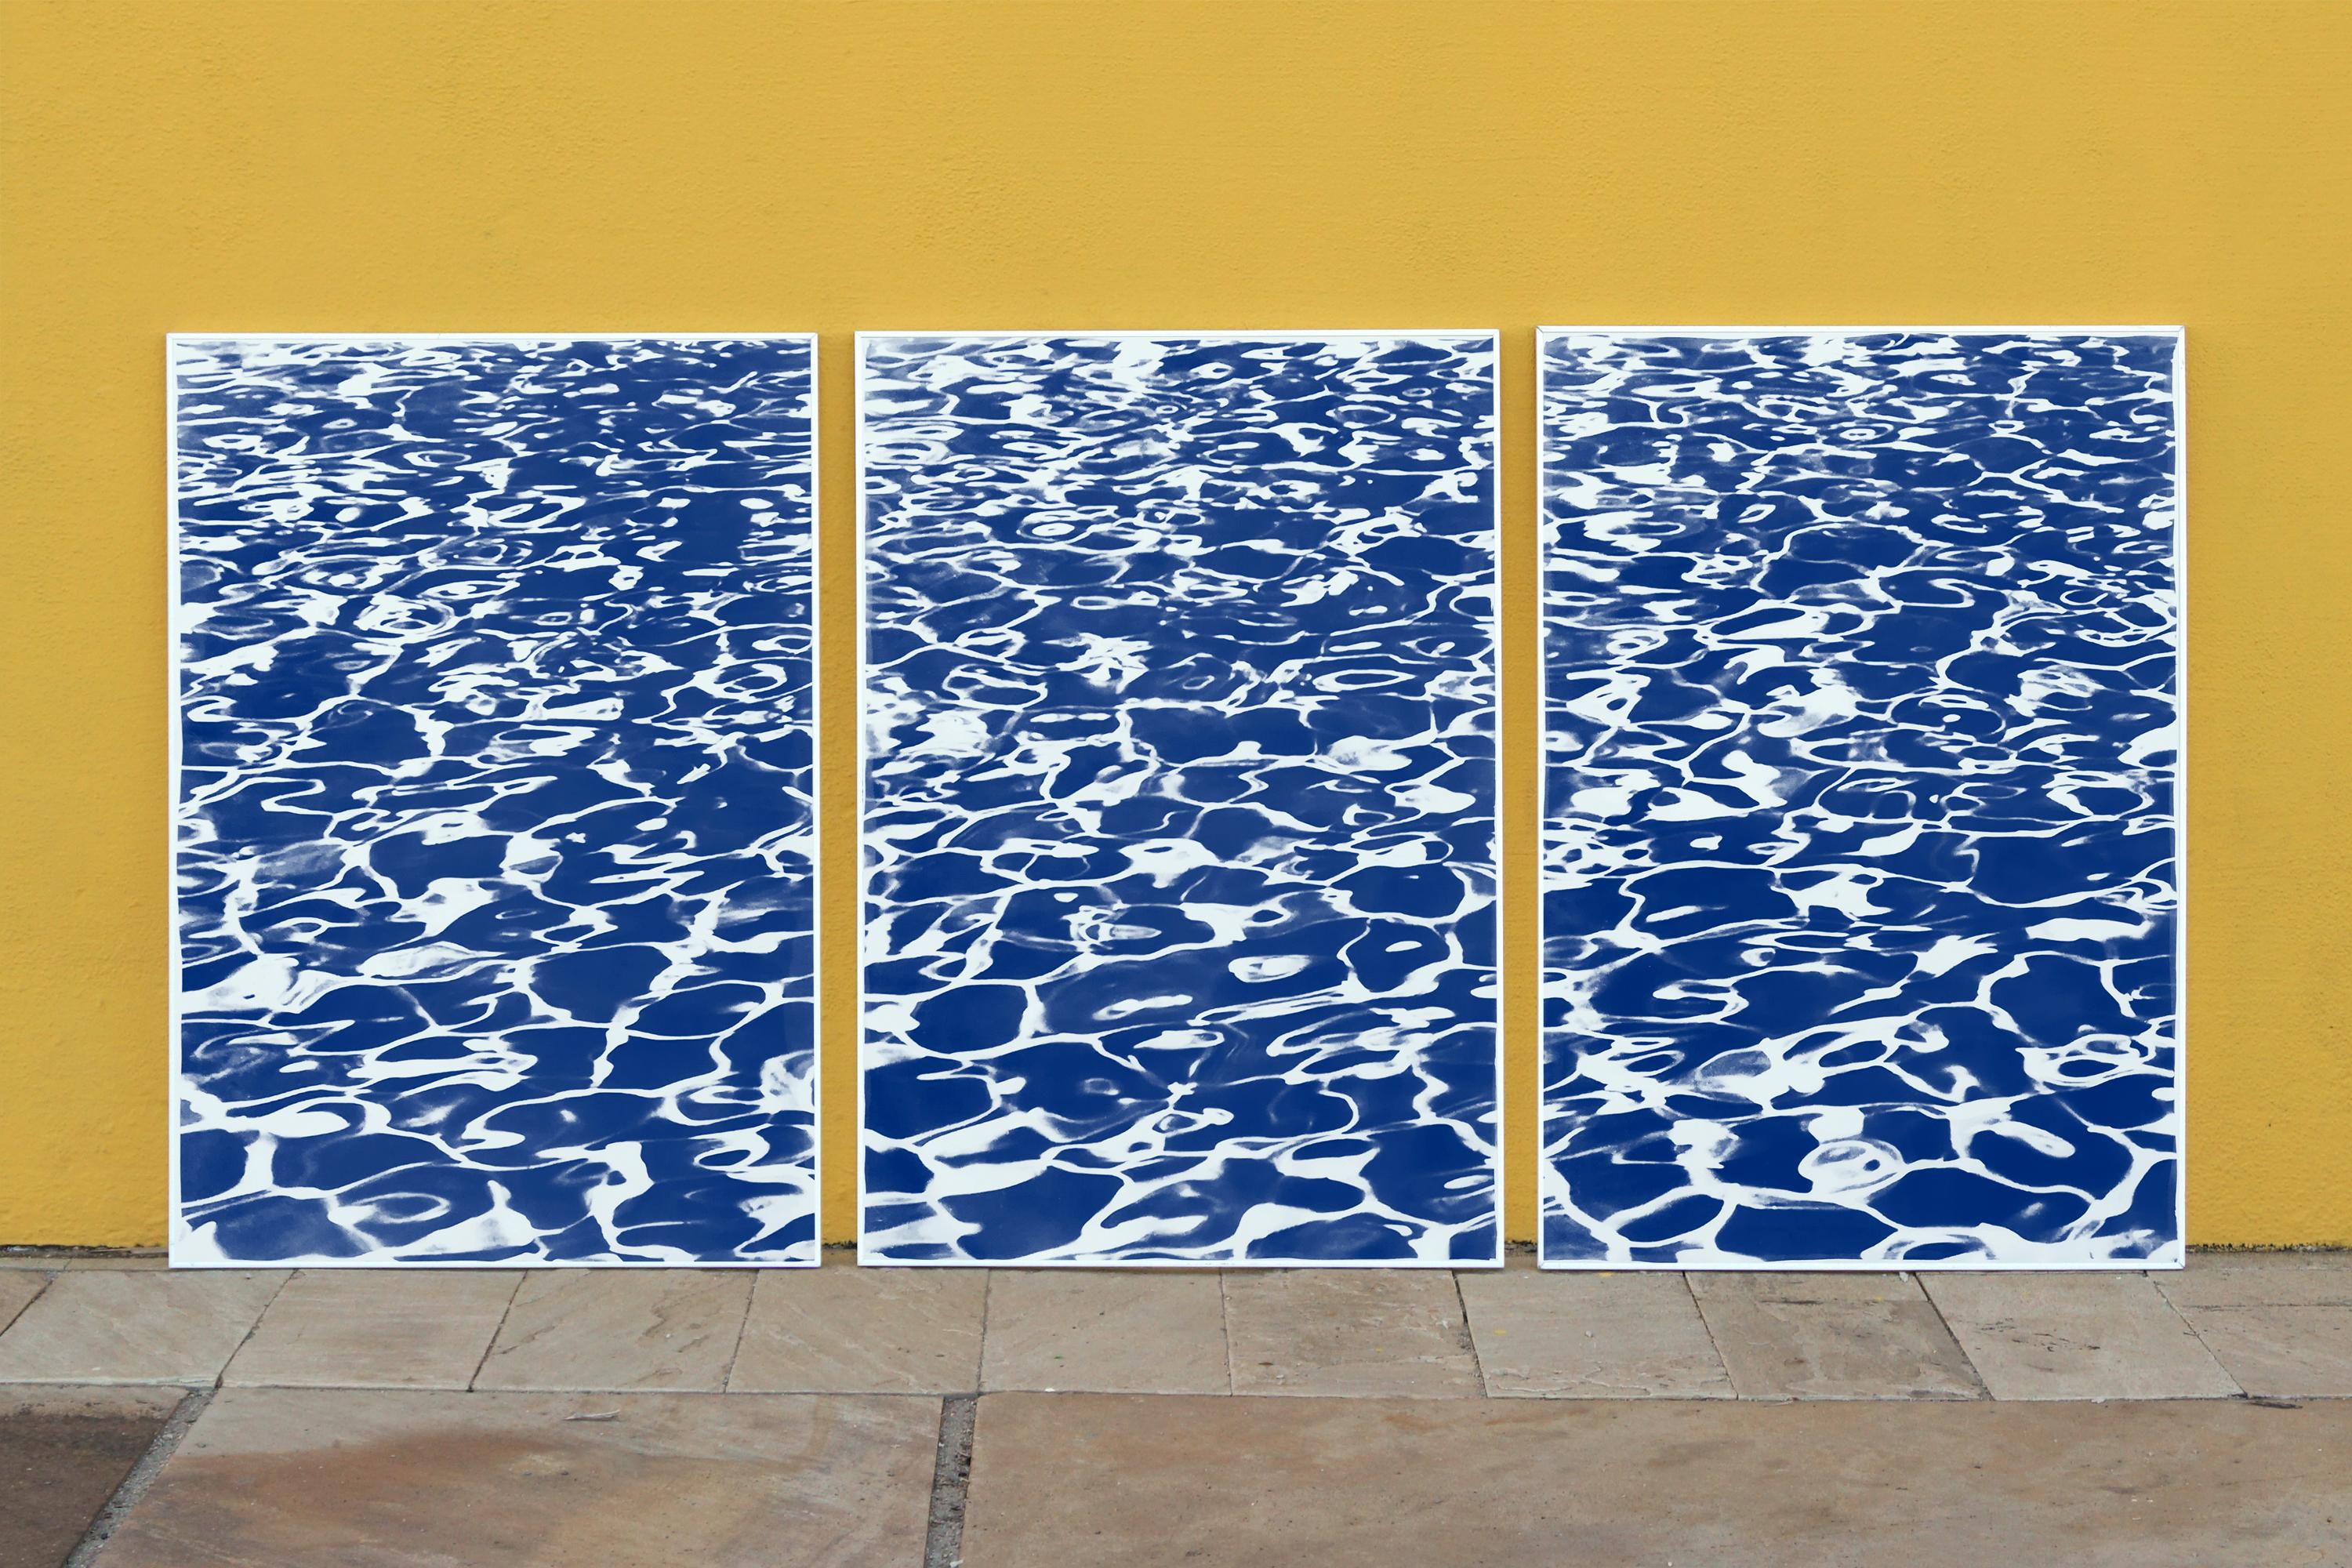 Patterns de piscine, triptyque de paysages marins abstraits nautiques, impression cyanotype bleu - Photograph de Kind of Cyan